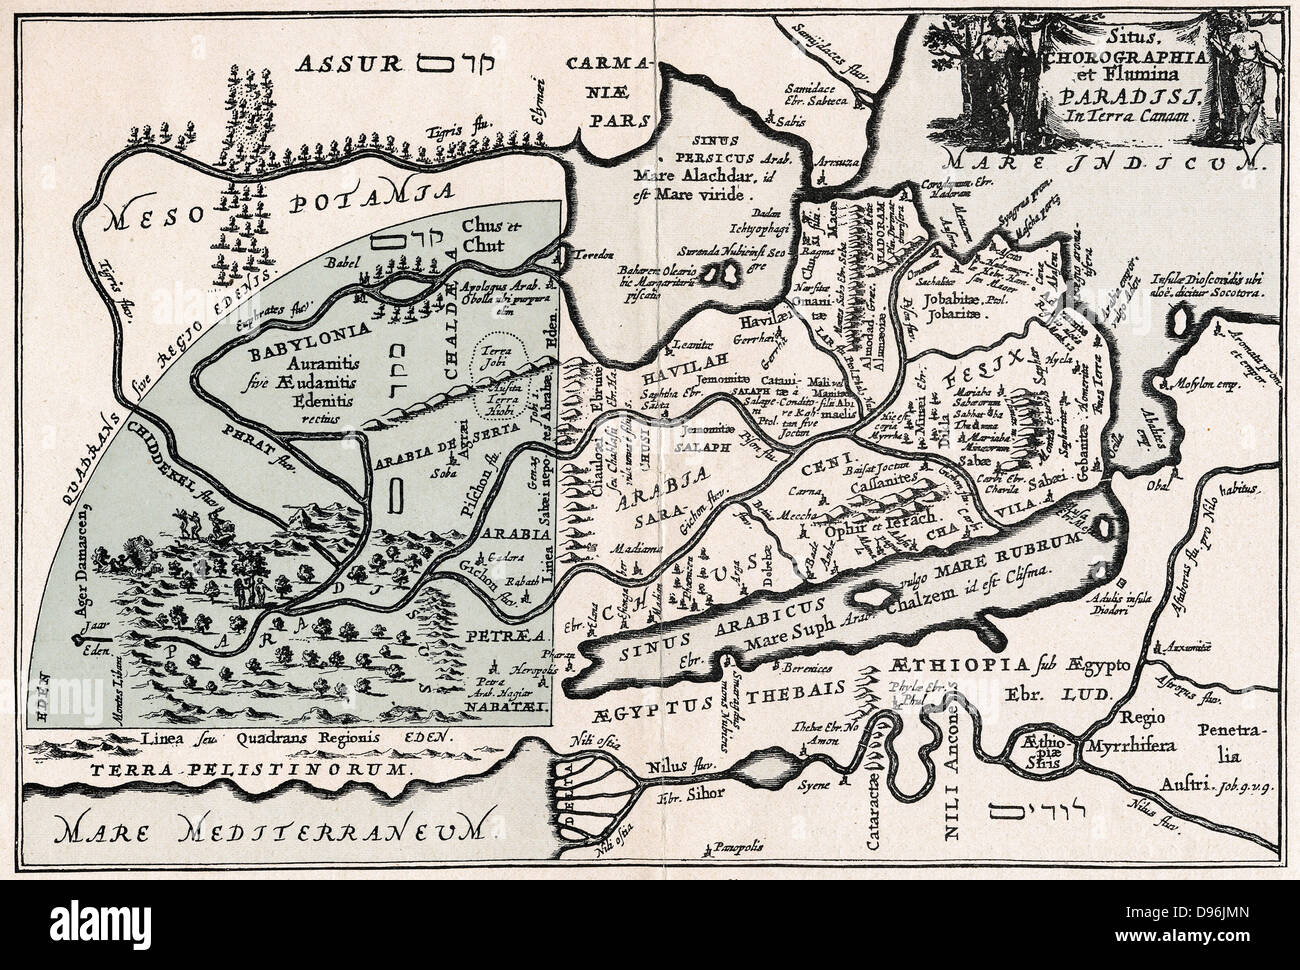 Karte mit vermeintlichen Lage des Paradieses. Garten Eden als Blau getönte Quadranten dargestellt. Nach der Gravur von 1678 von der Arbeit von Johann Herbinius (1633-1676), Schlesische-lutherischen Minister geboren. Stockfoto